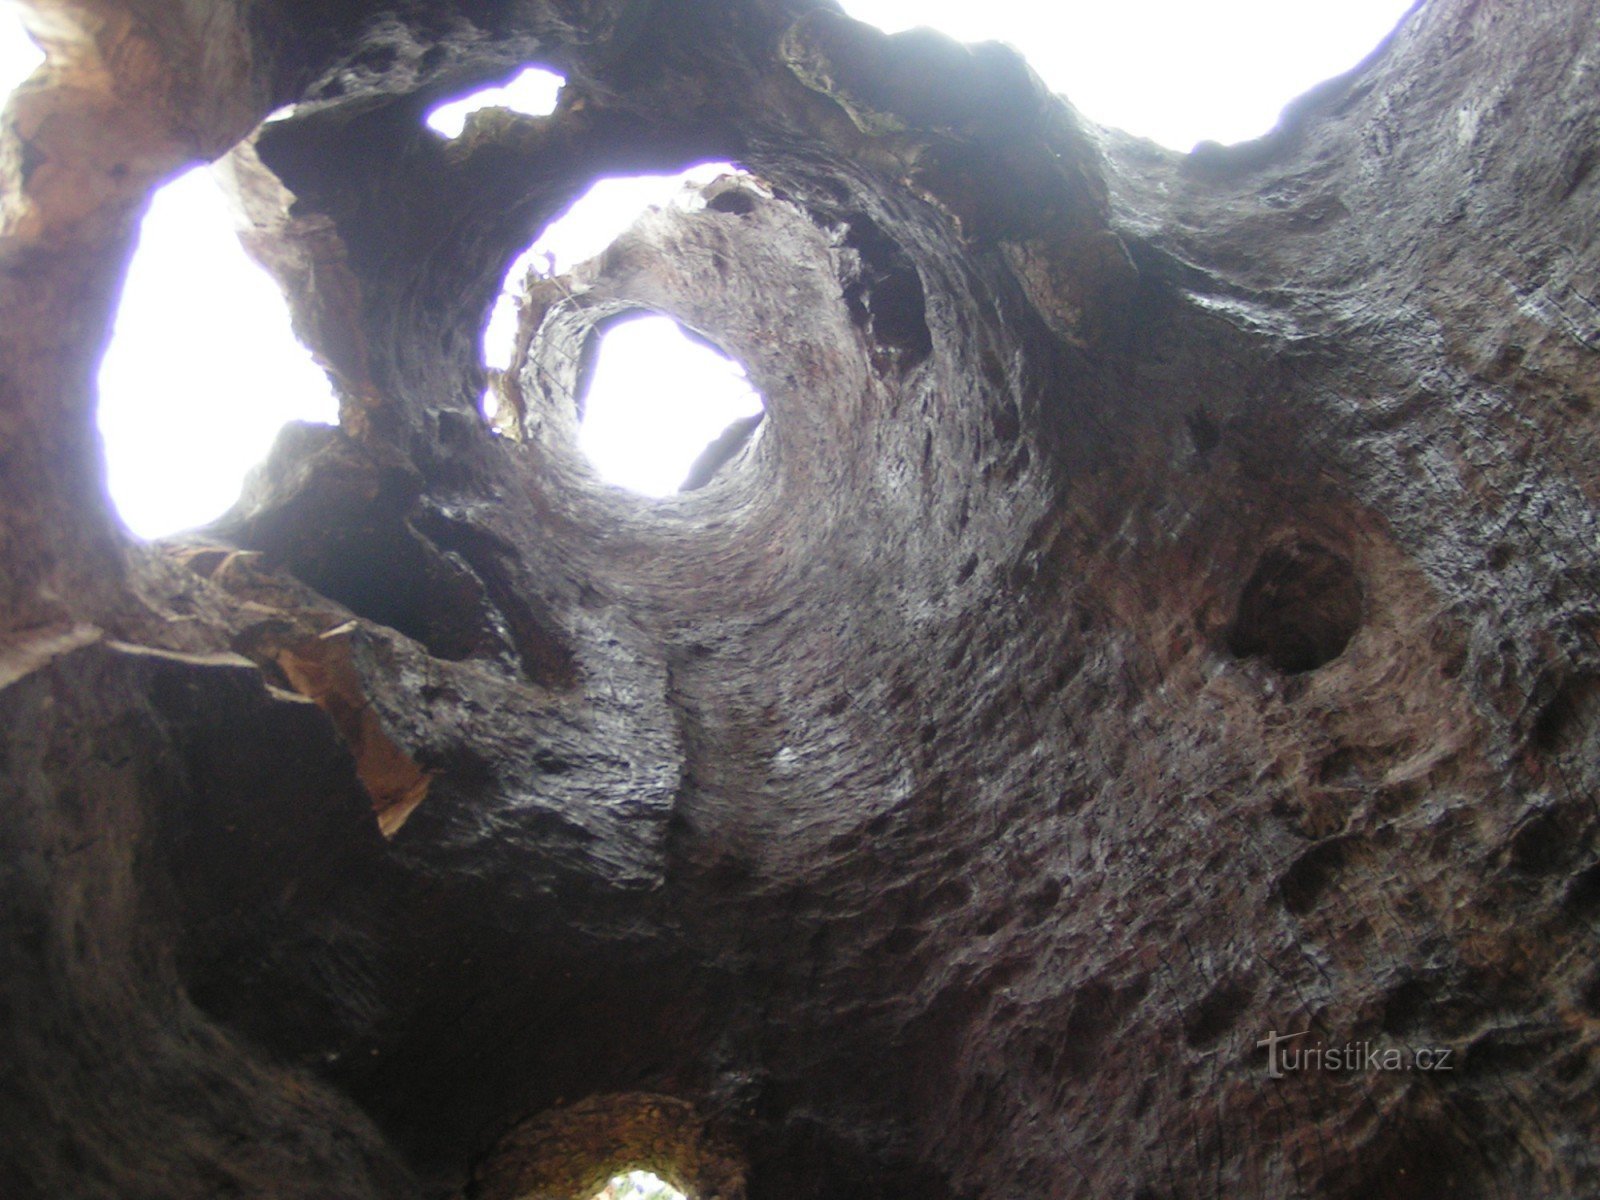 Udsigt gennem den hule stamme af et ahorntræ